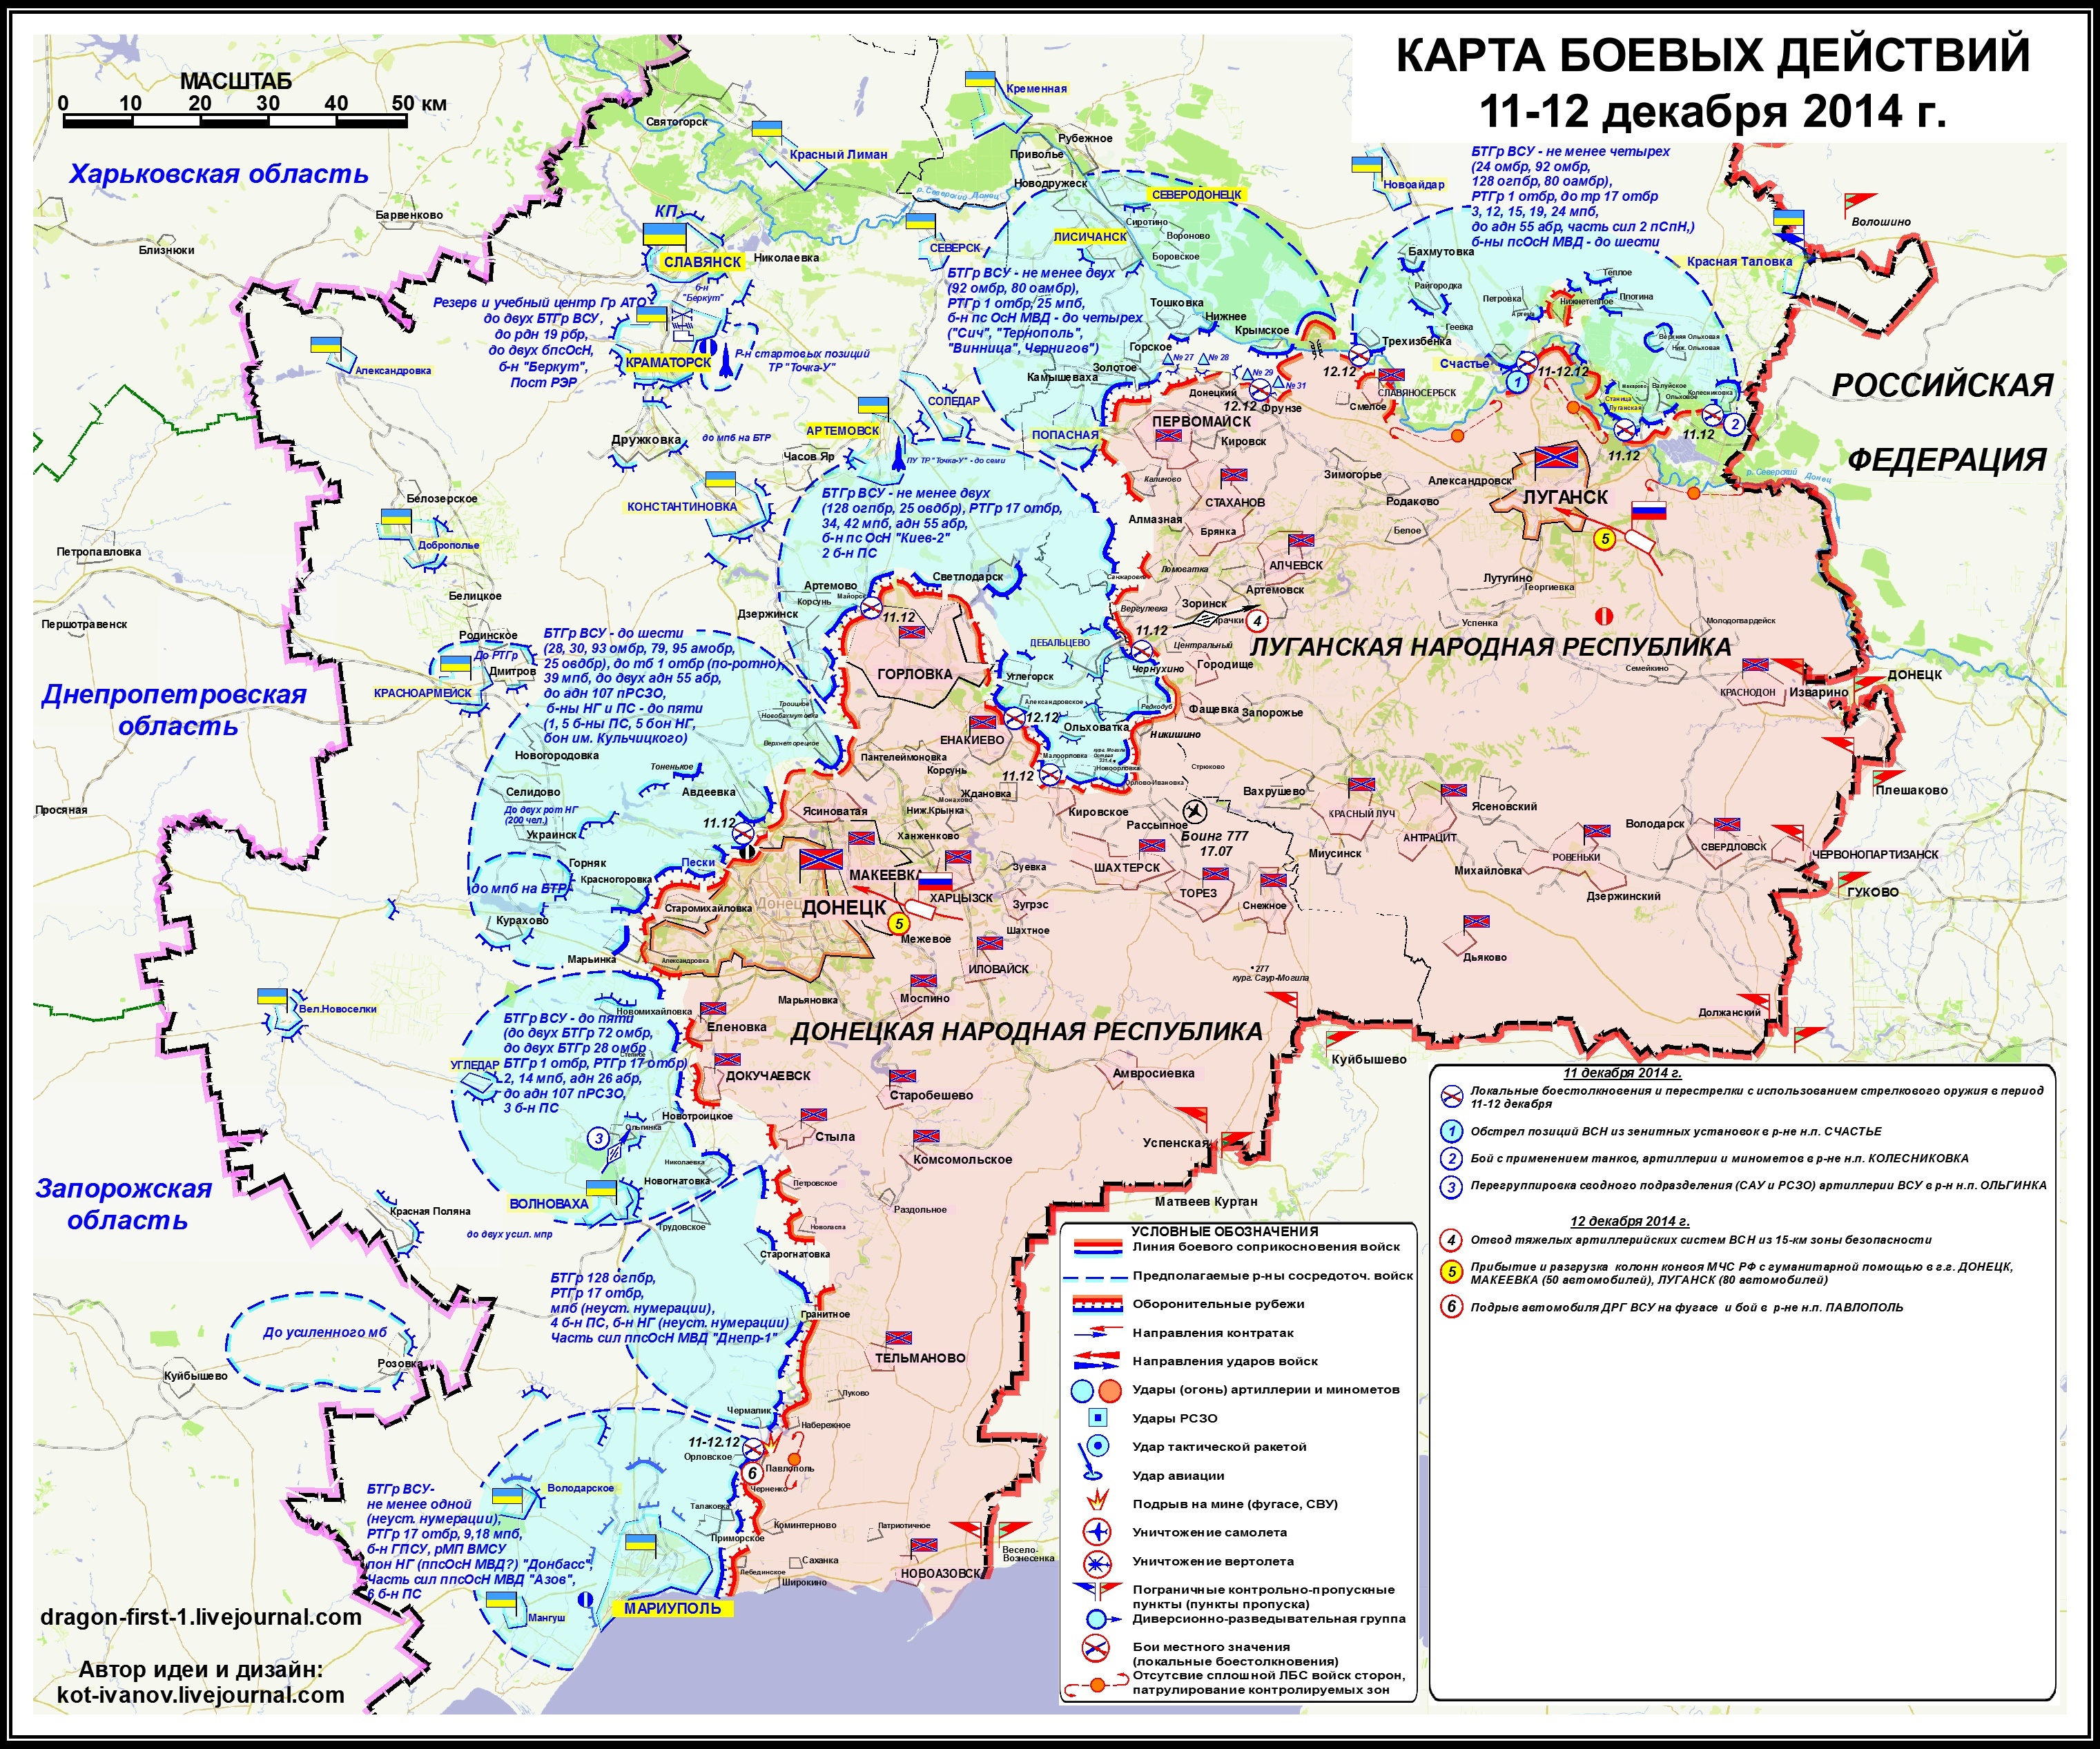 Карта боевых действий в Новороссии  11-12 декабря